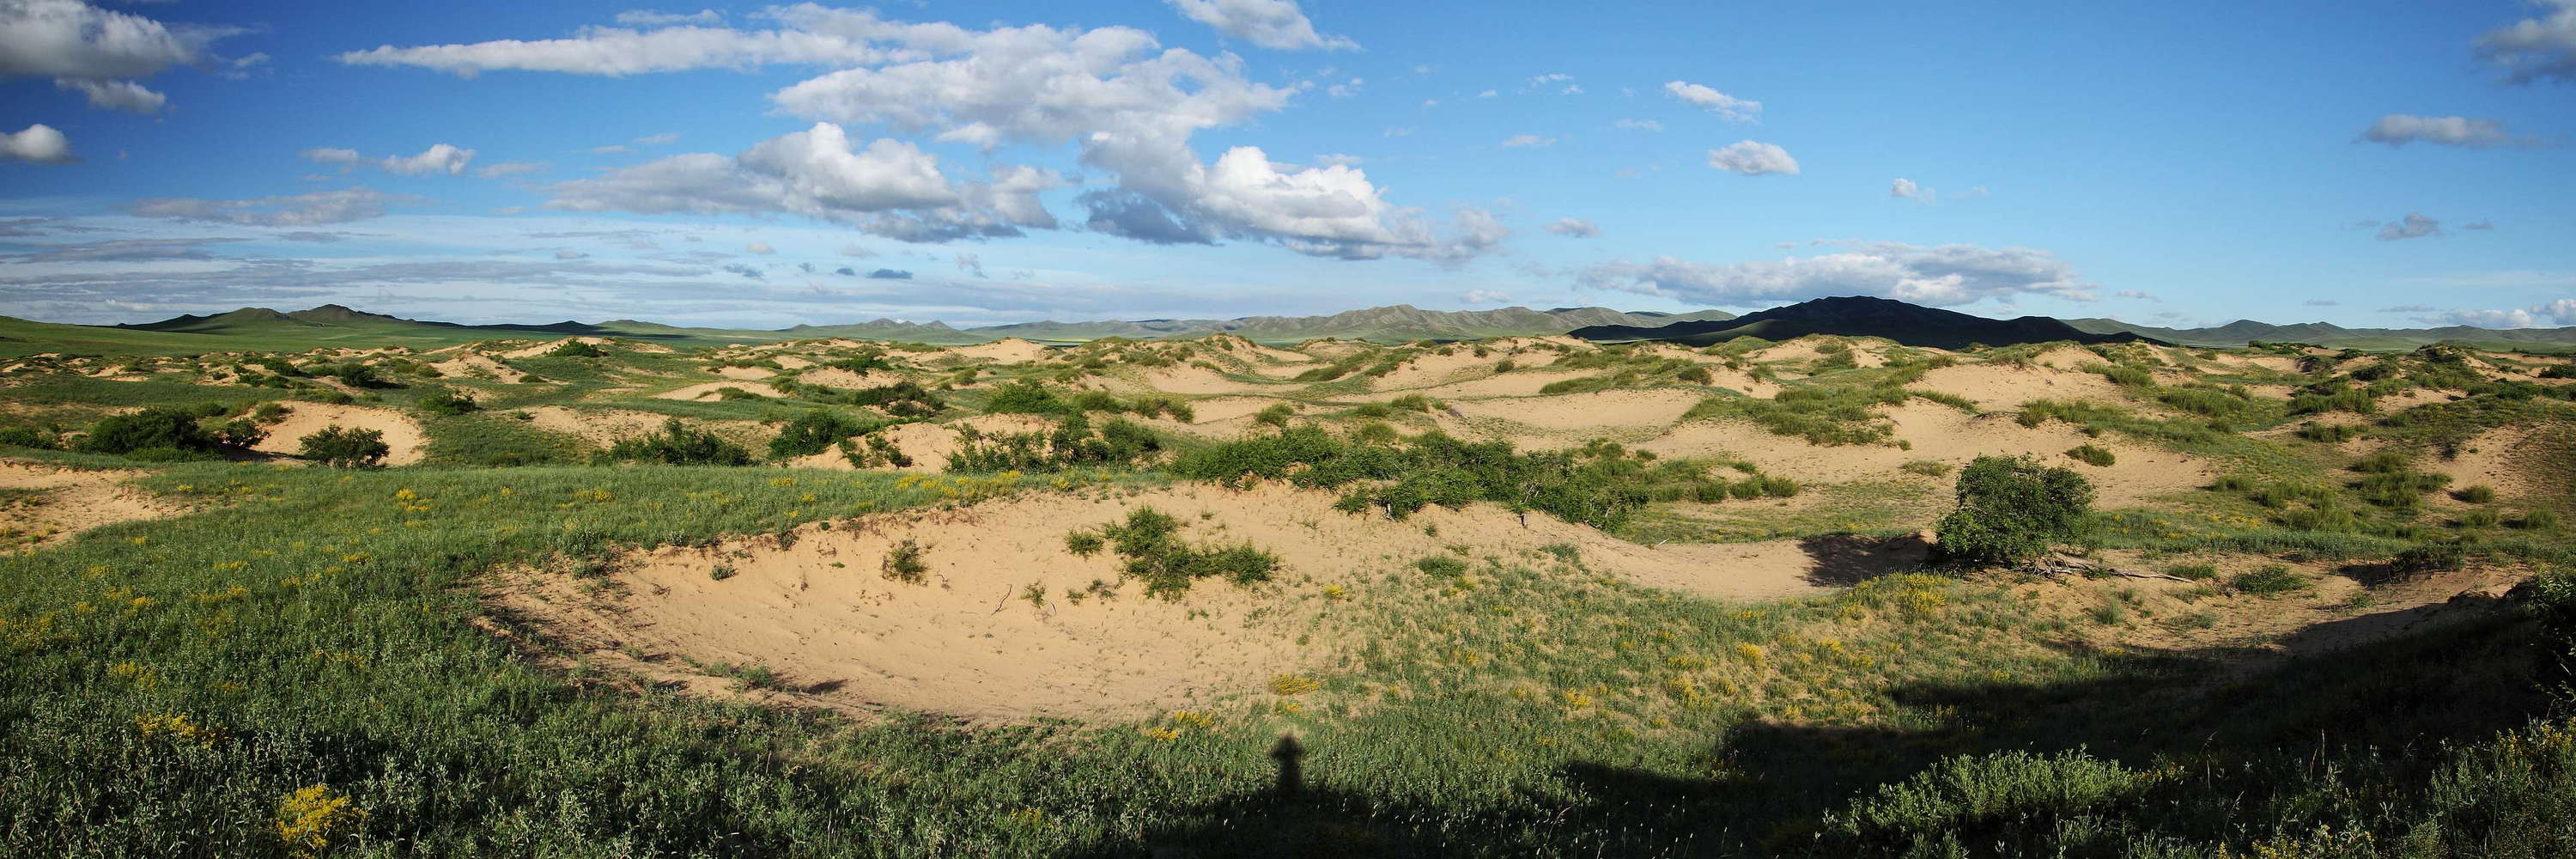 Khustayn Uul National Park  |  Vegetated dune field